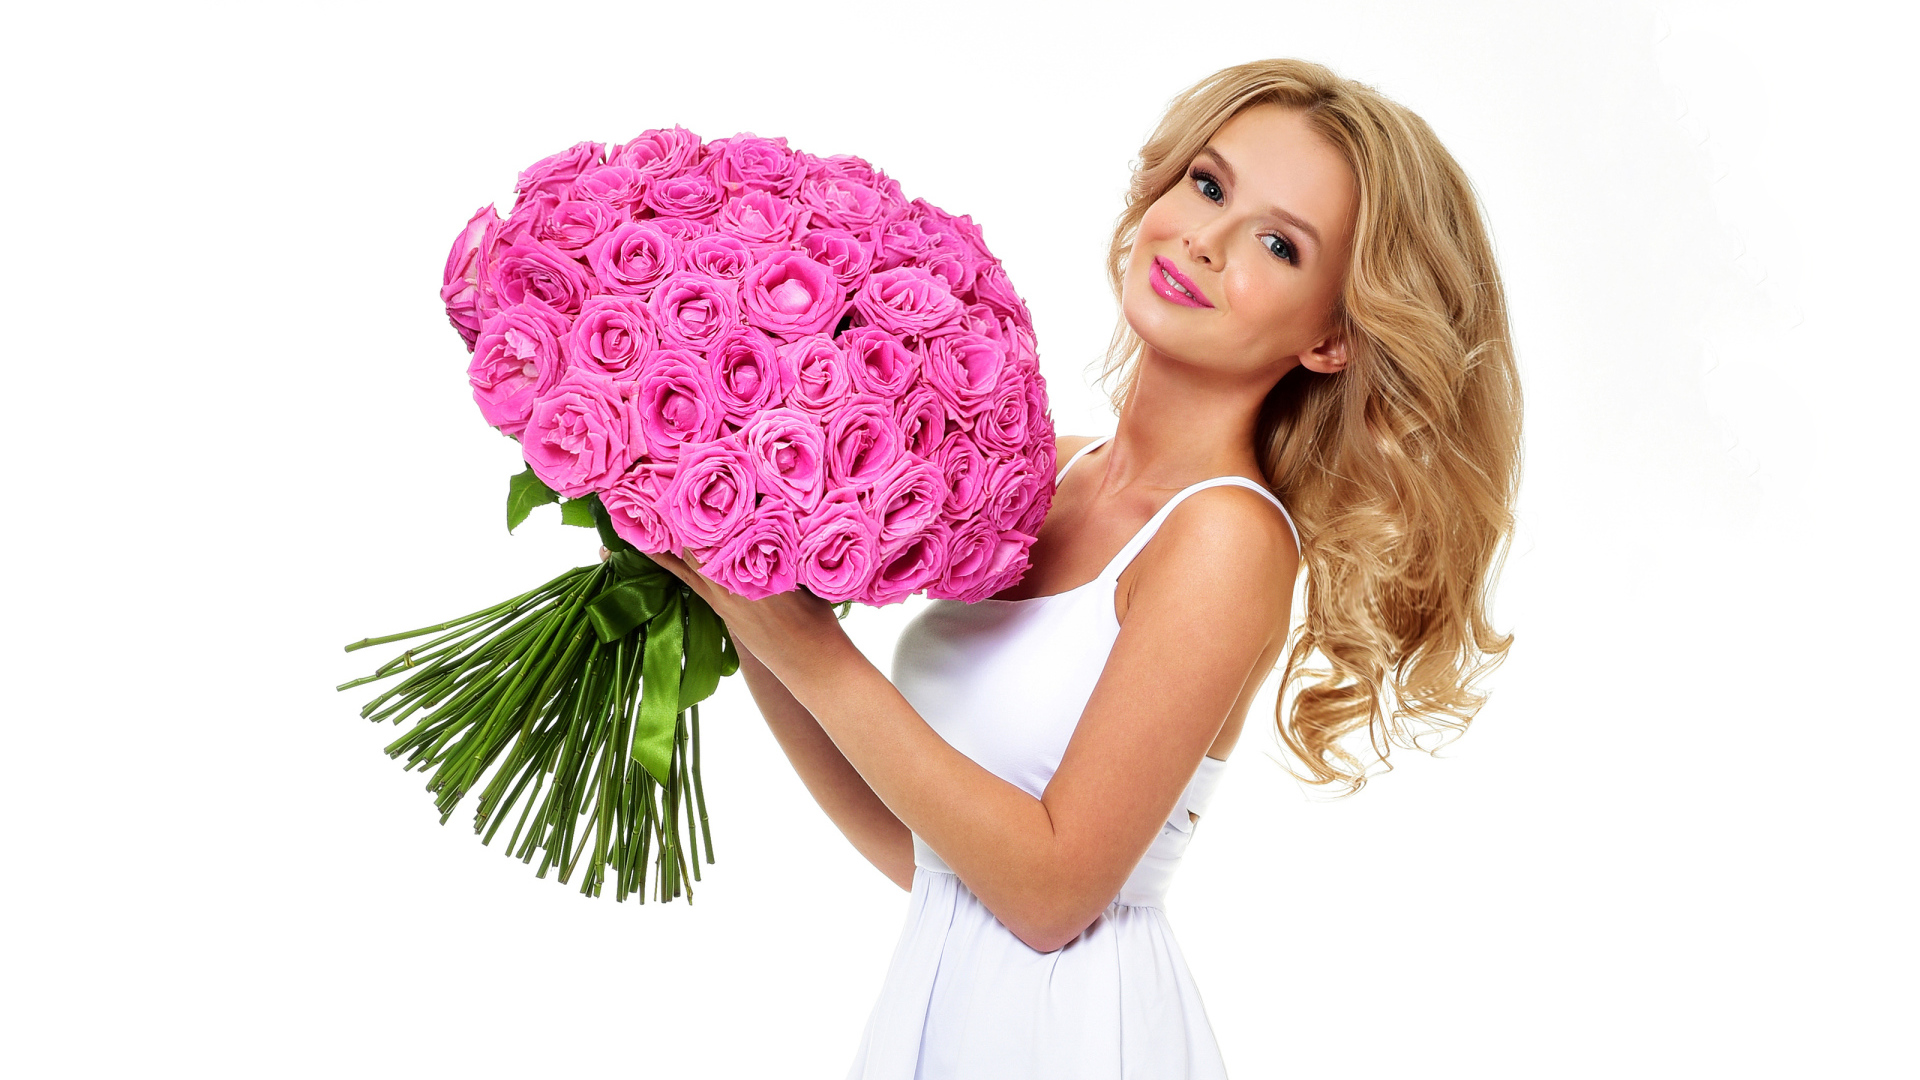 Красивая блондинка с большим букетом розовых роз на белом фоне